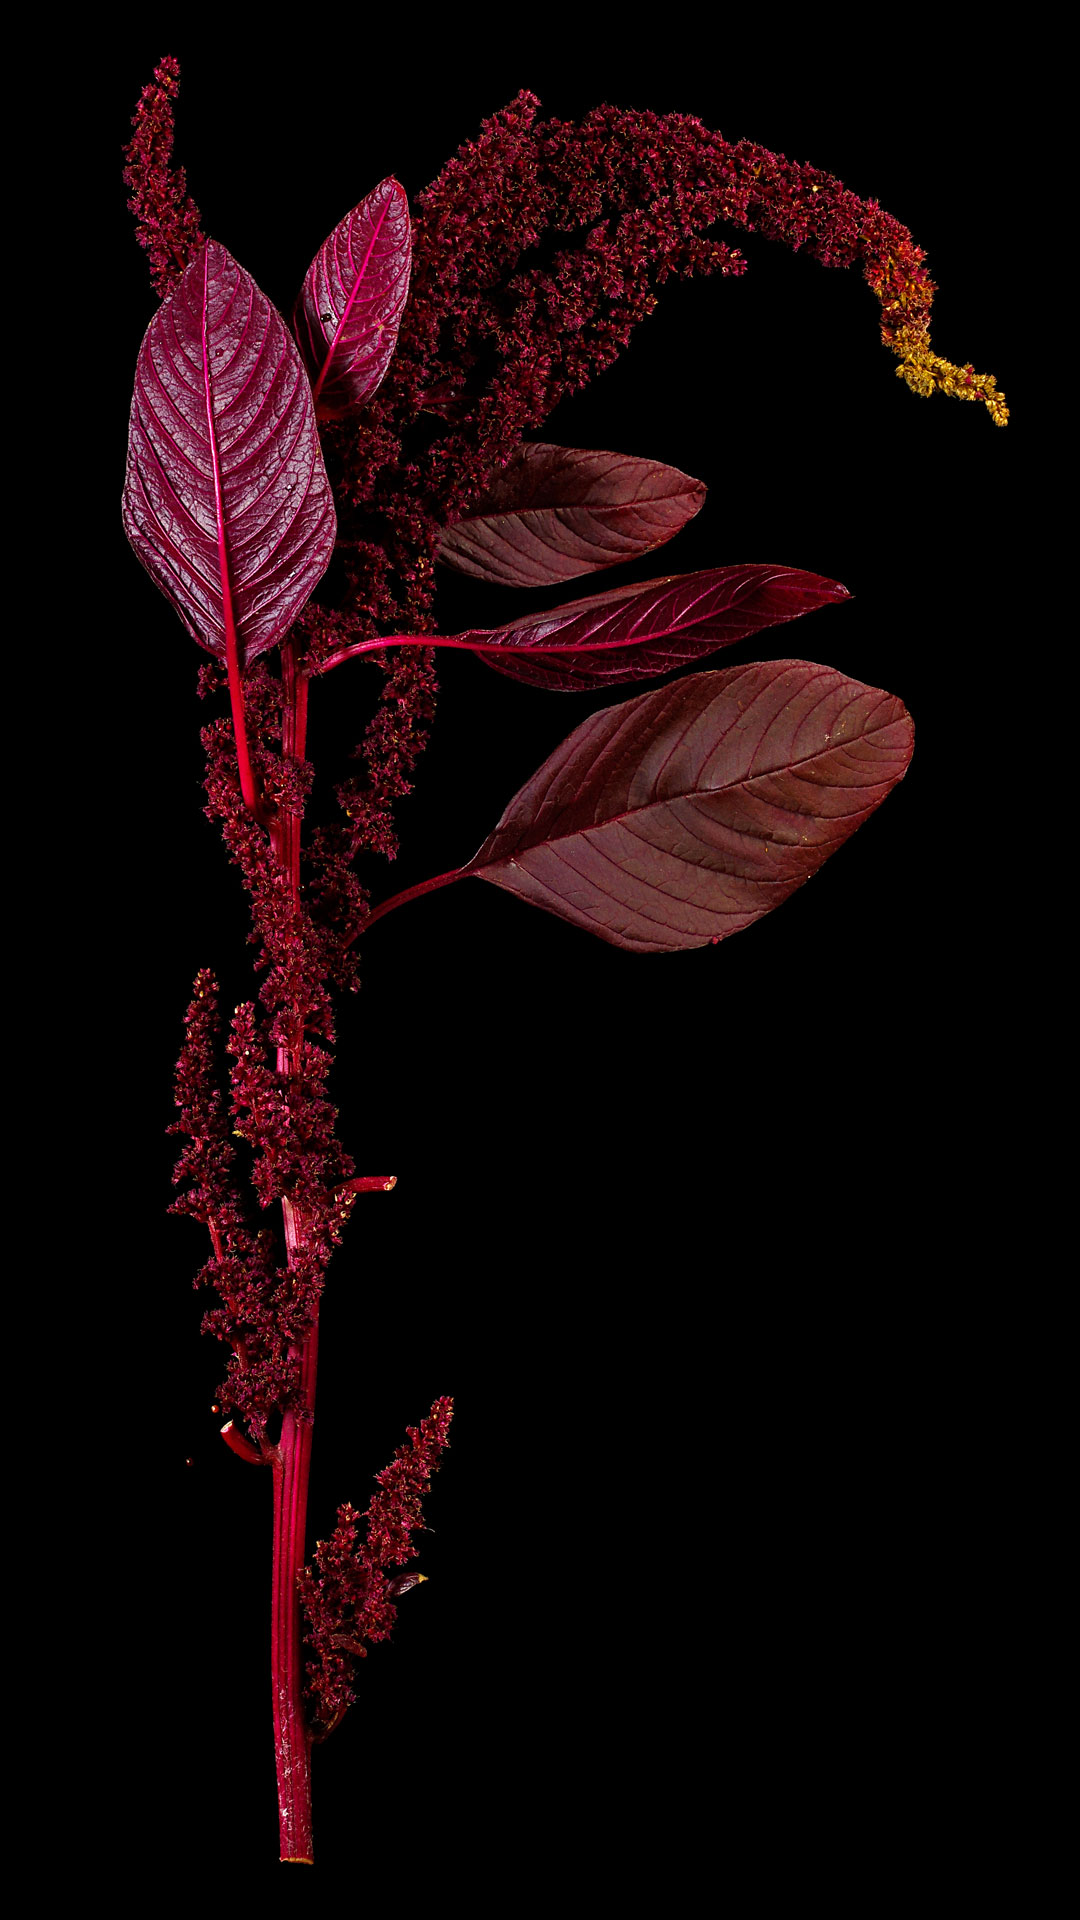 Der Färber-Fuchsschwanz: Amaranthus cruentus x powellii ‚Hopi red dye‘